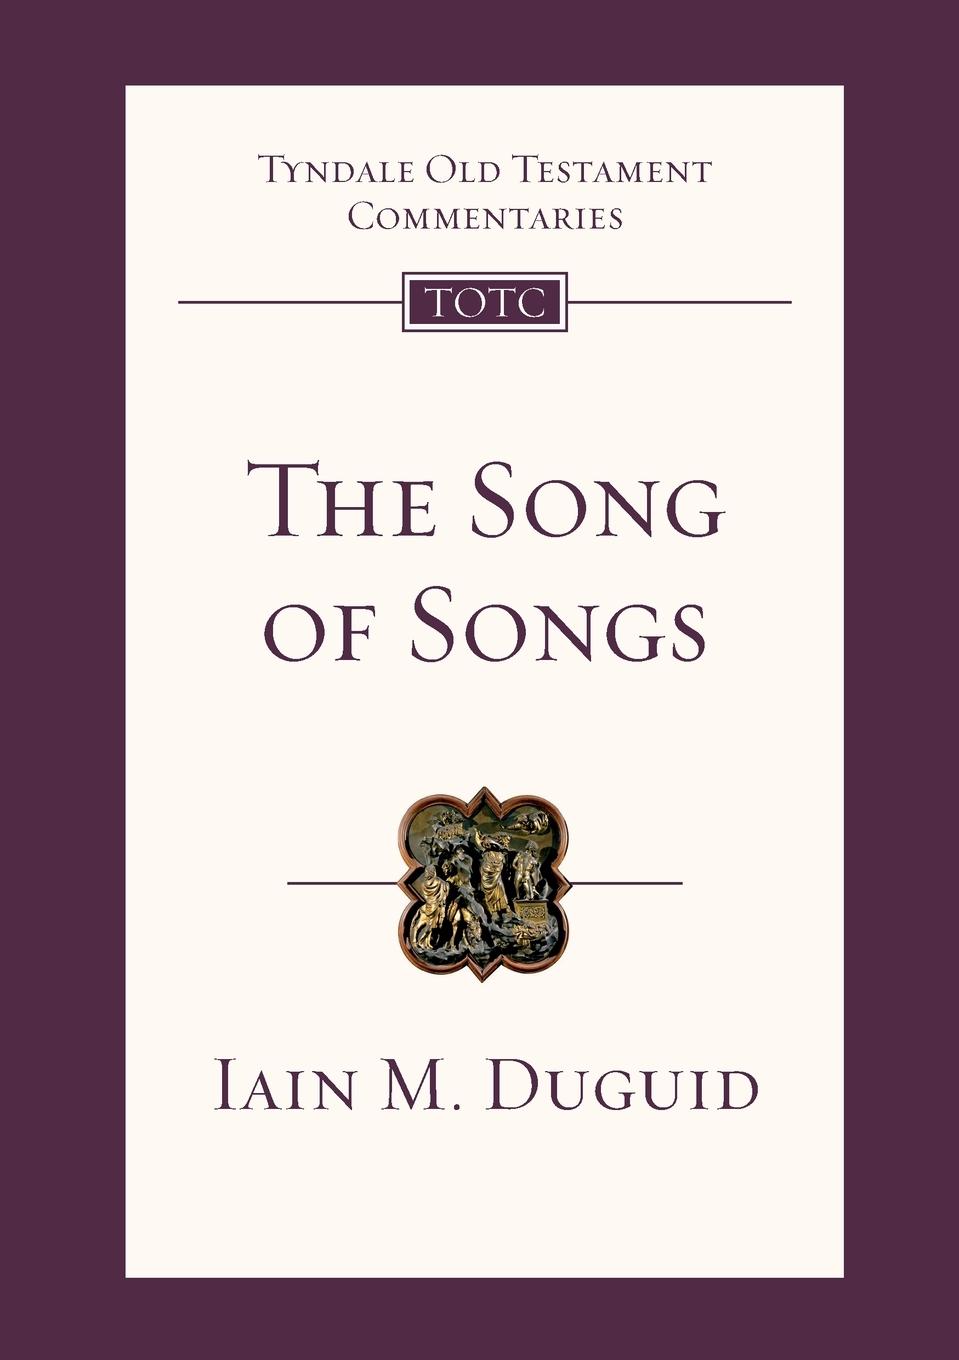 The Song of Songs / Iain M Duguid / Taschenbuch / Paperback / Kartoniert / Broschiert / Englisch / 2015 / IVP / EAN 9781783591909 - Duguid, Iain M